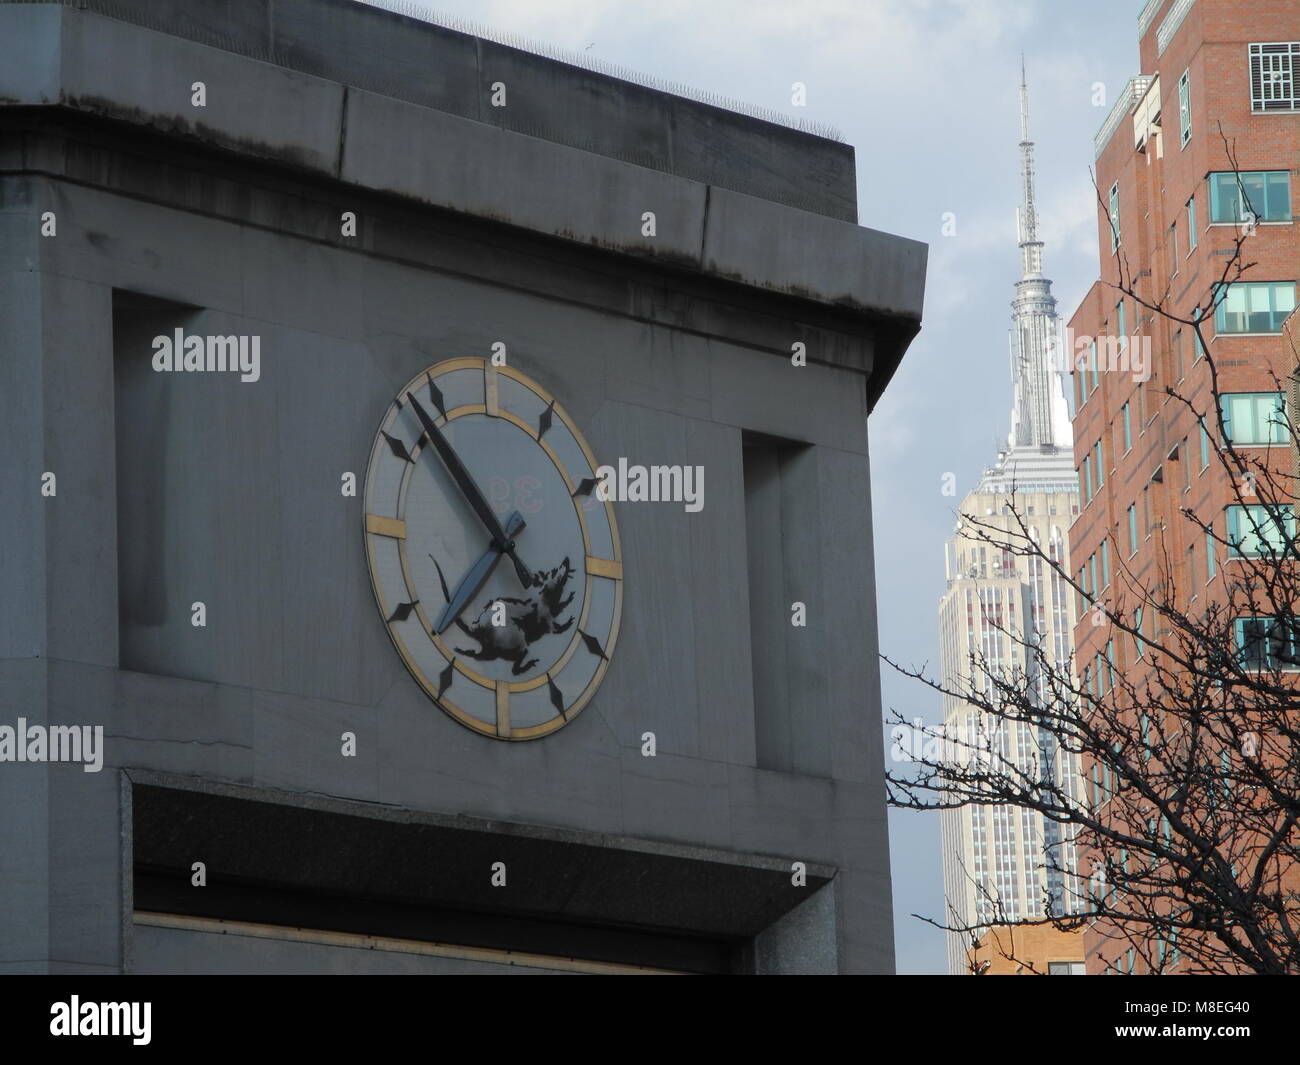 15 März 2018, USA, New York: Das Bild einer Ratte durch die britische Graffiti Künstler Banksy auf eine Uhr gesprüht wird, entsteht der Eindruck, dass das Tier auf einem Laufrad läuft. Die Uhr ist Teil einer kommerziellen Bau fit für den Abriss. Foto: Johannes Schmitt-Tegge/dpa Stockfoto